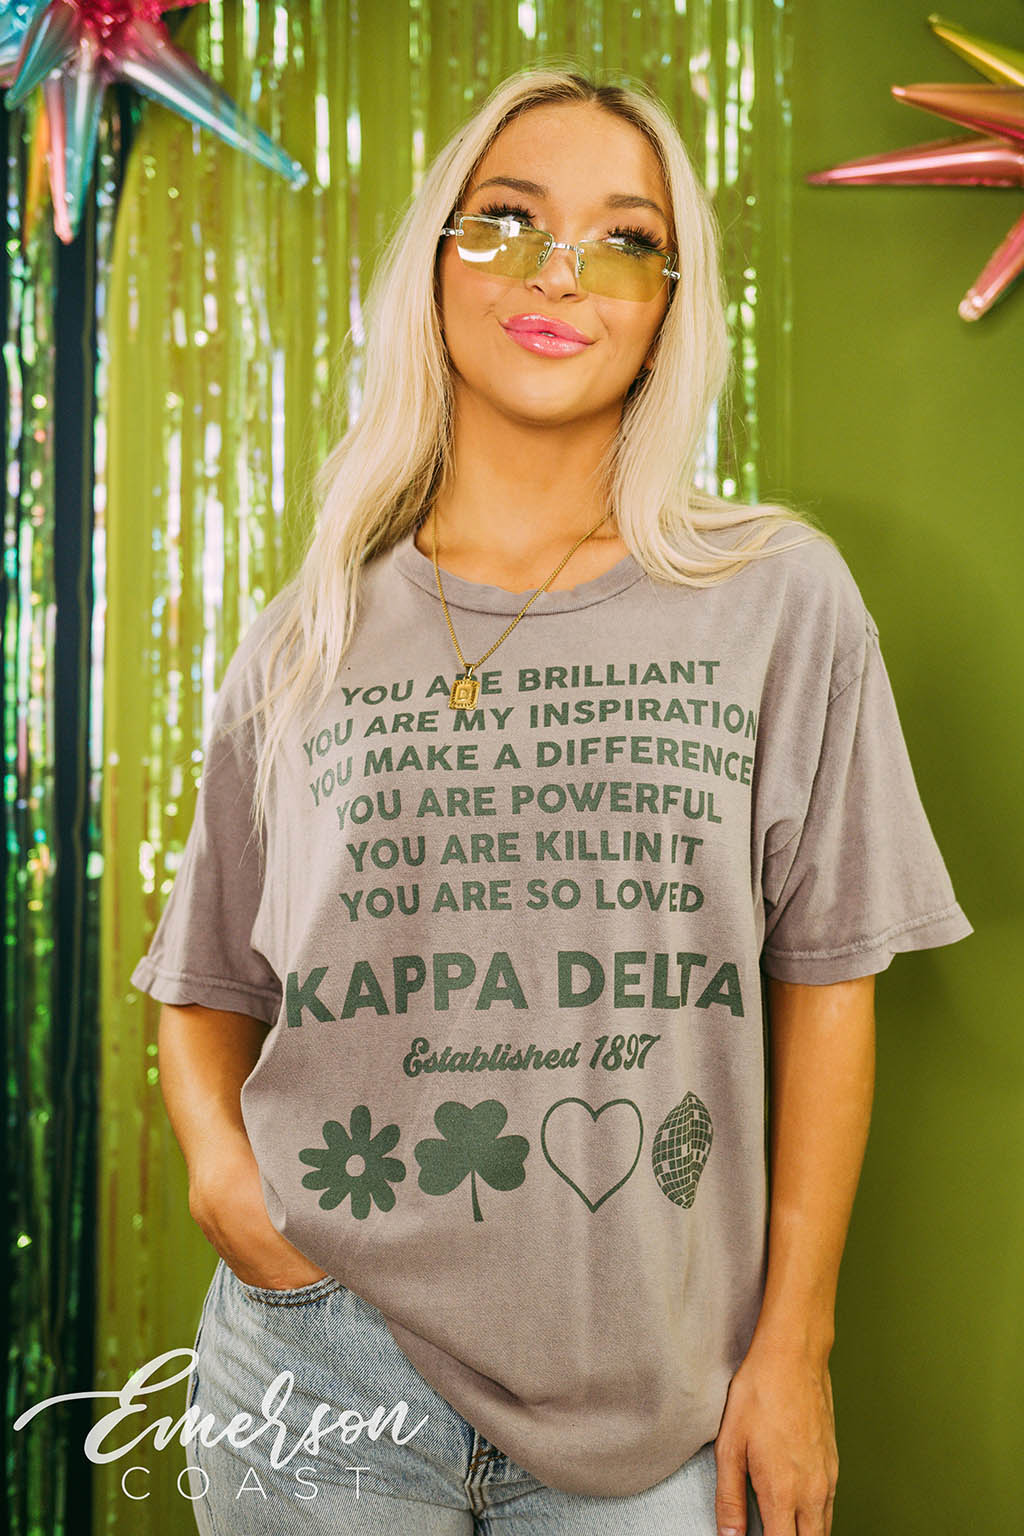 Kappa Delta Recruitment You Are Brilliant Tee